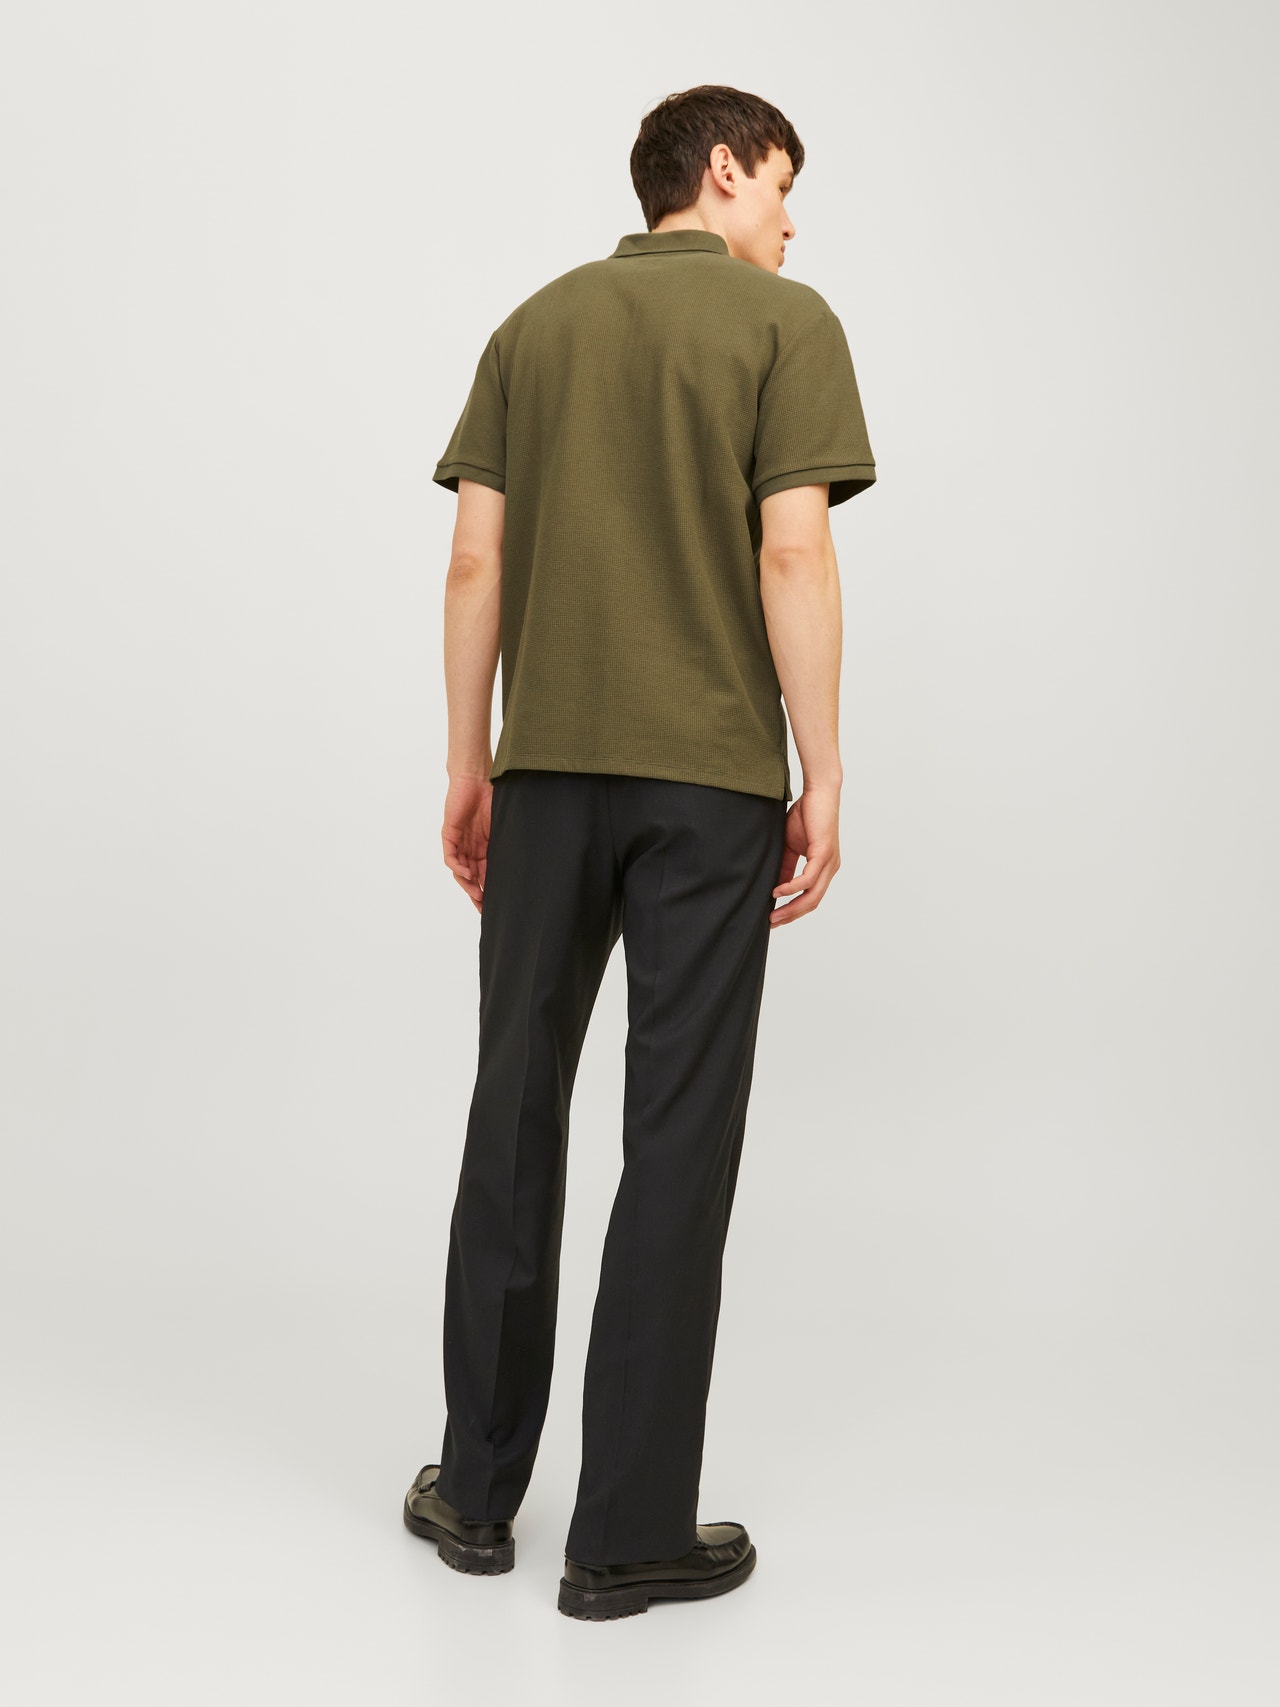 Jack & Jones Plain Polo T-shirt -Olive Night - 12255578